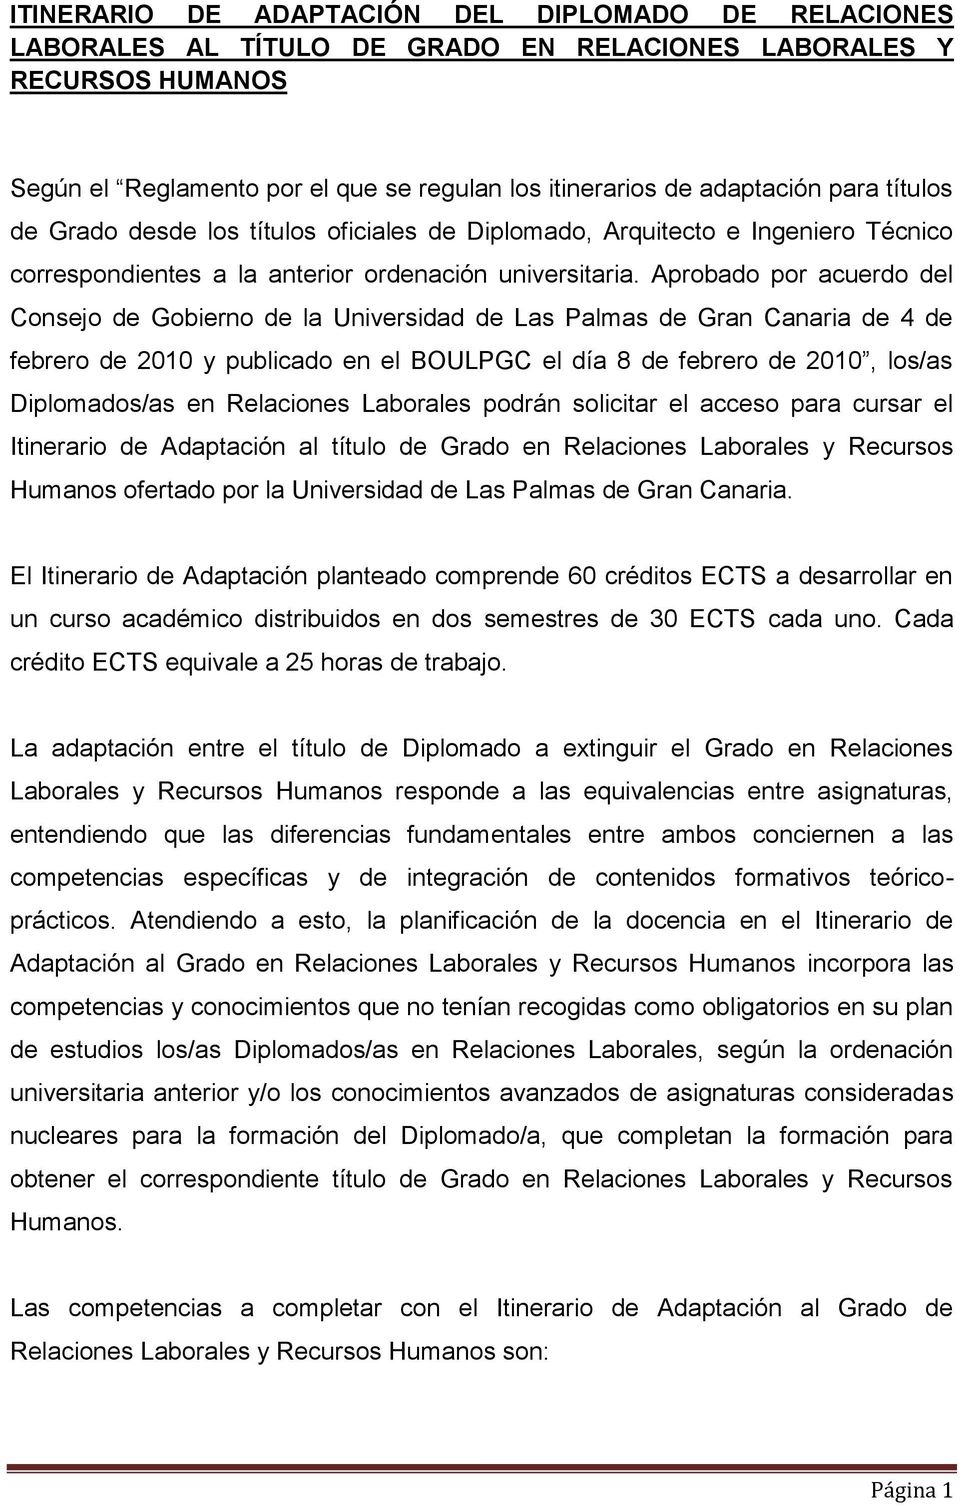 Aprobado por acuerdo del Consejo de Gobierno de la Universidad de Las Palmas de Gran Canaria de 4 de febrero de 2010 y publicado en el BOULPGC el día 8 de febrero de 2010, los/as Diplomados/as en